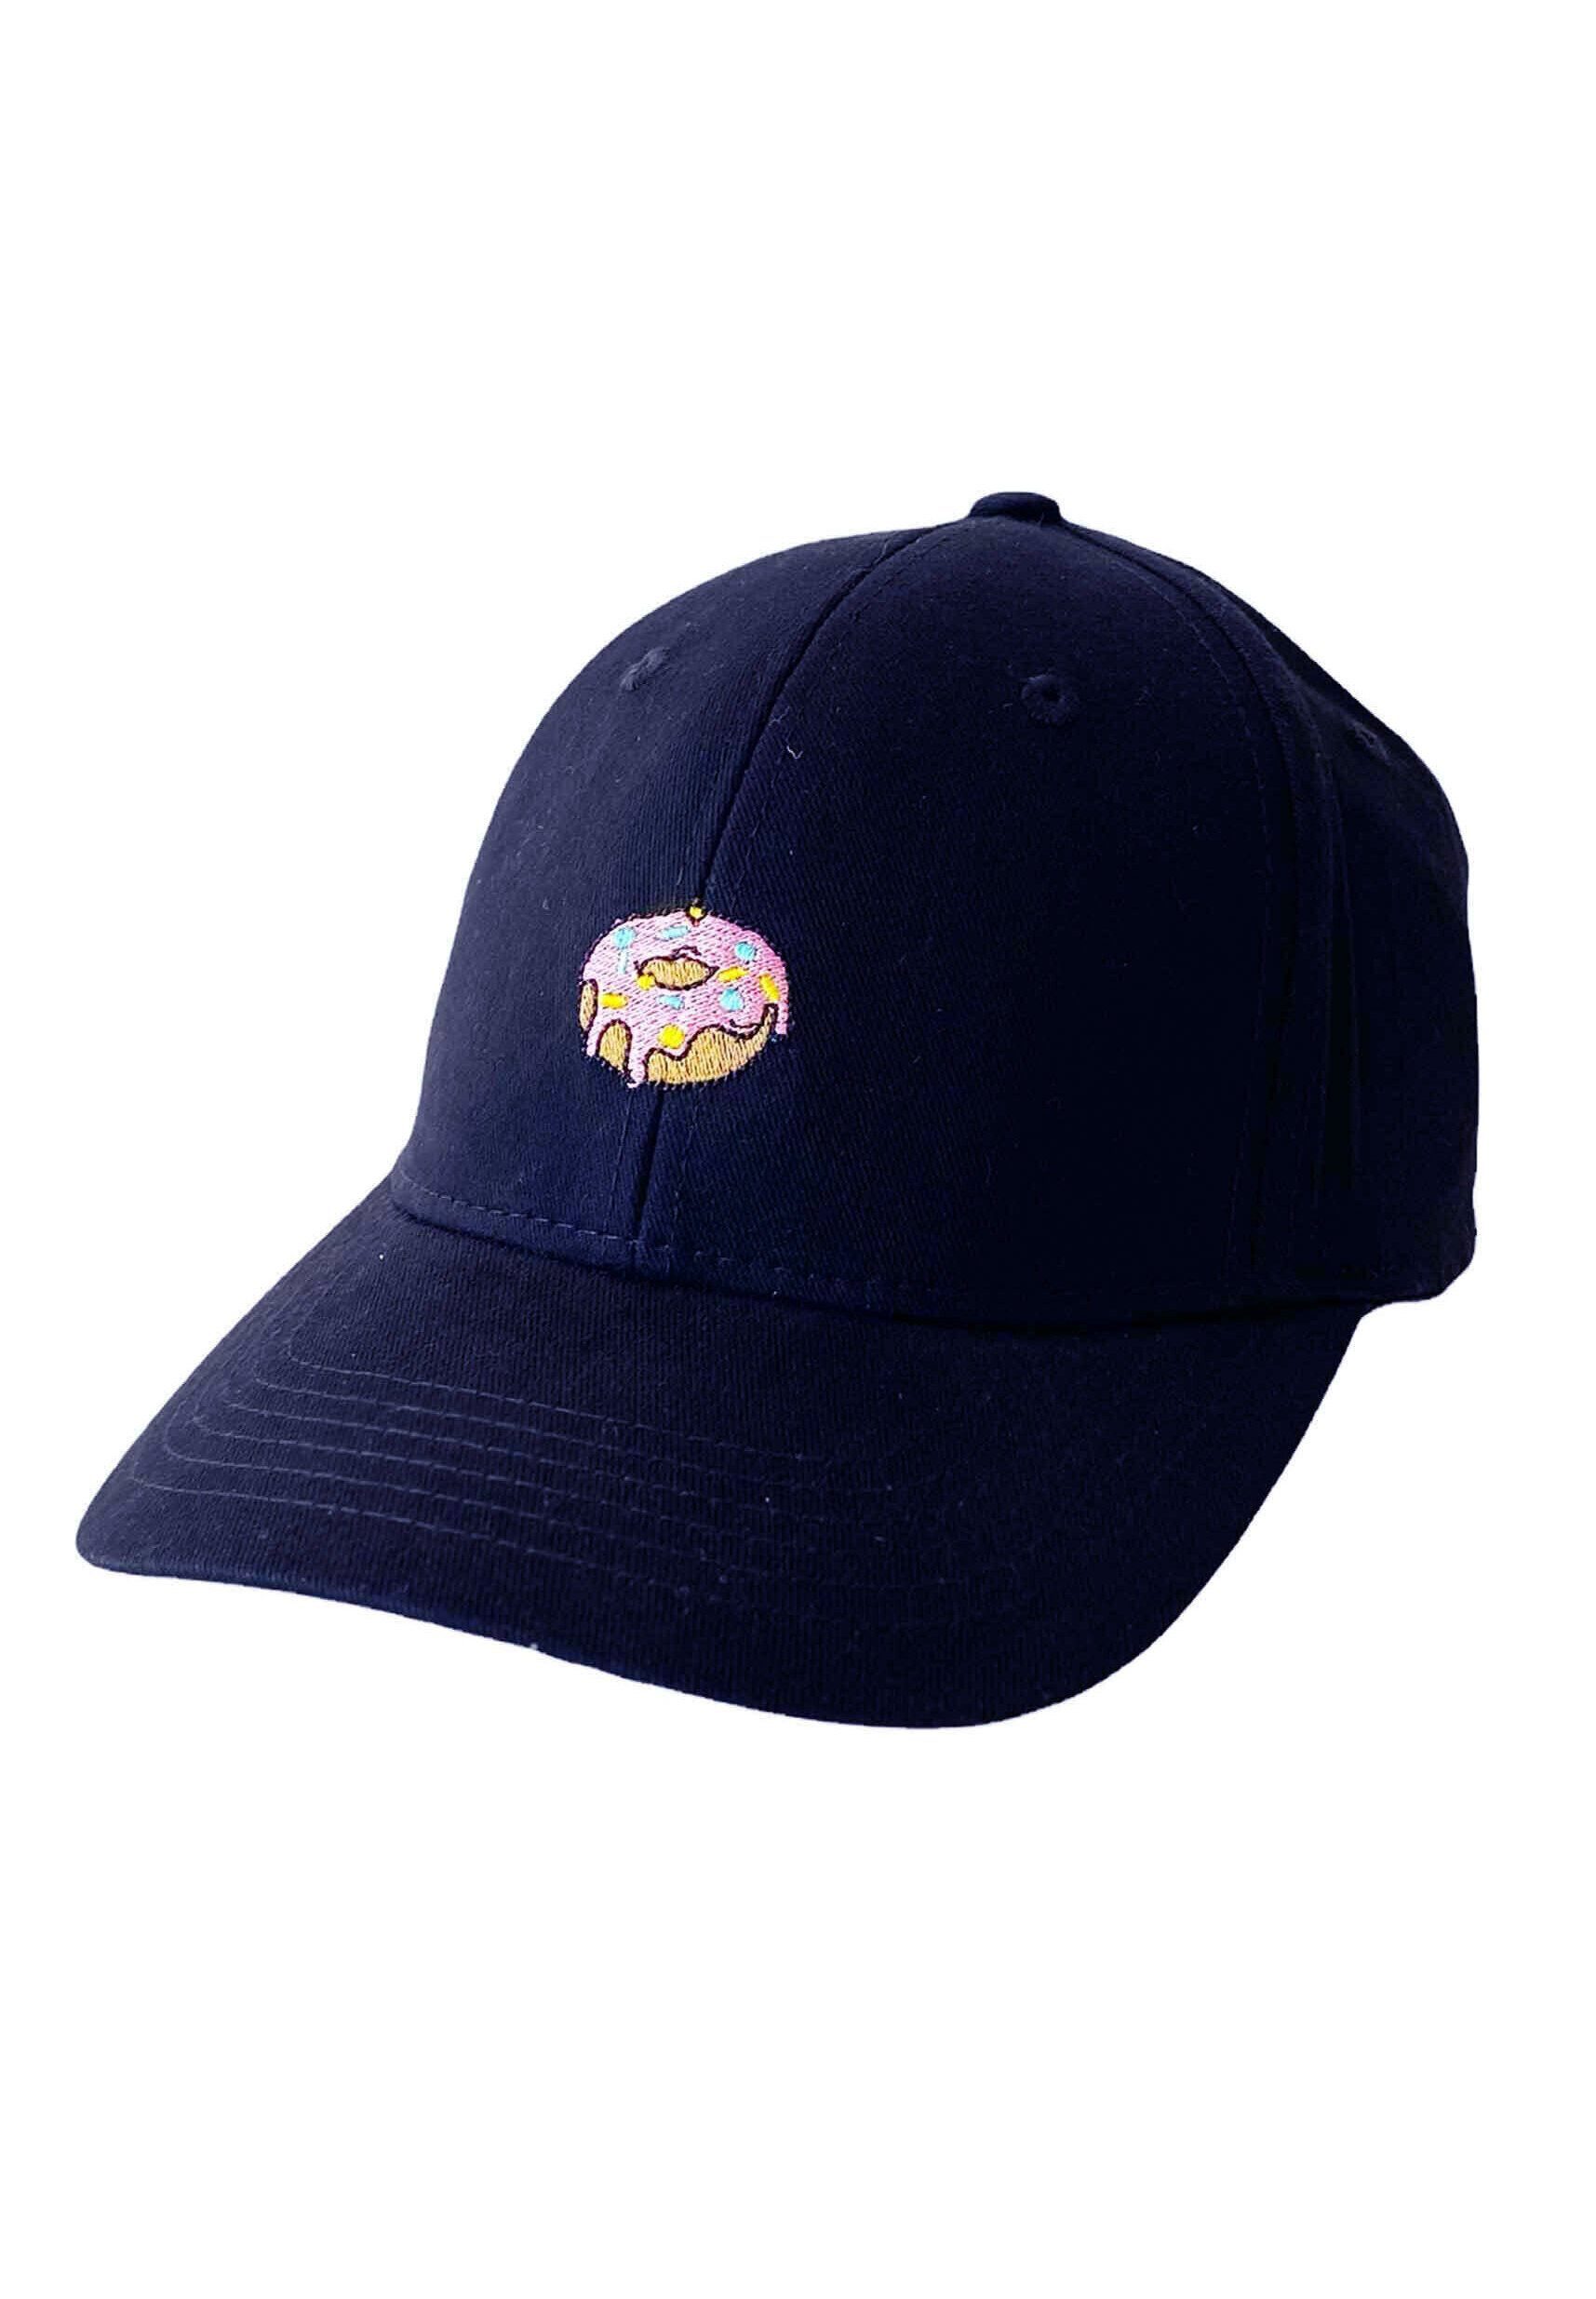 Mütze Donut Cap Baseball MIKON